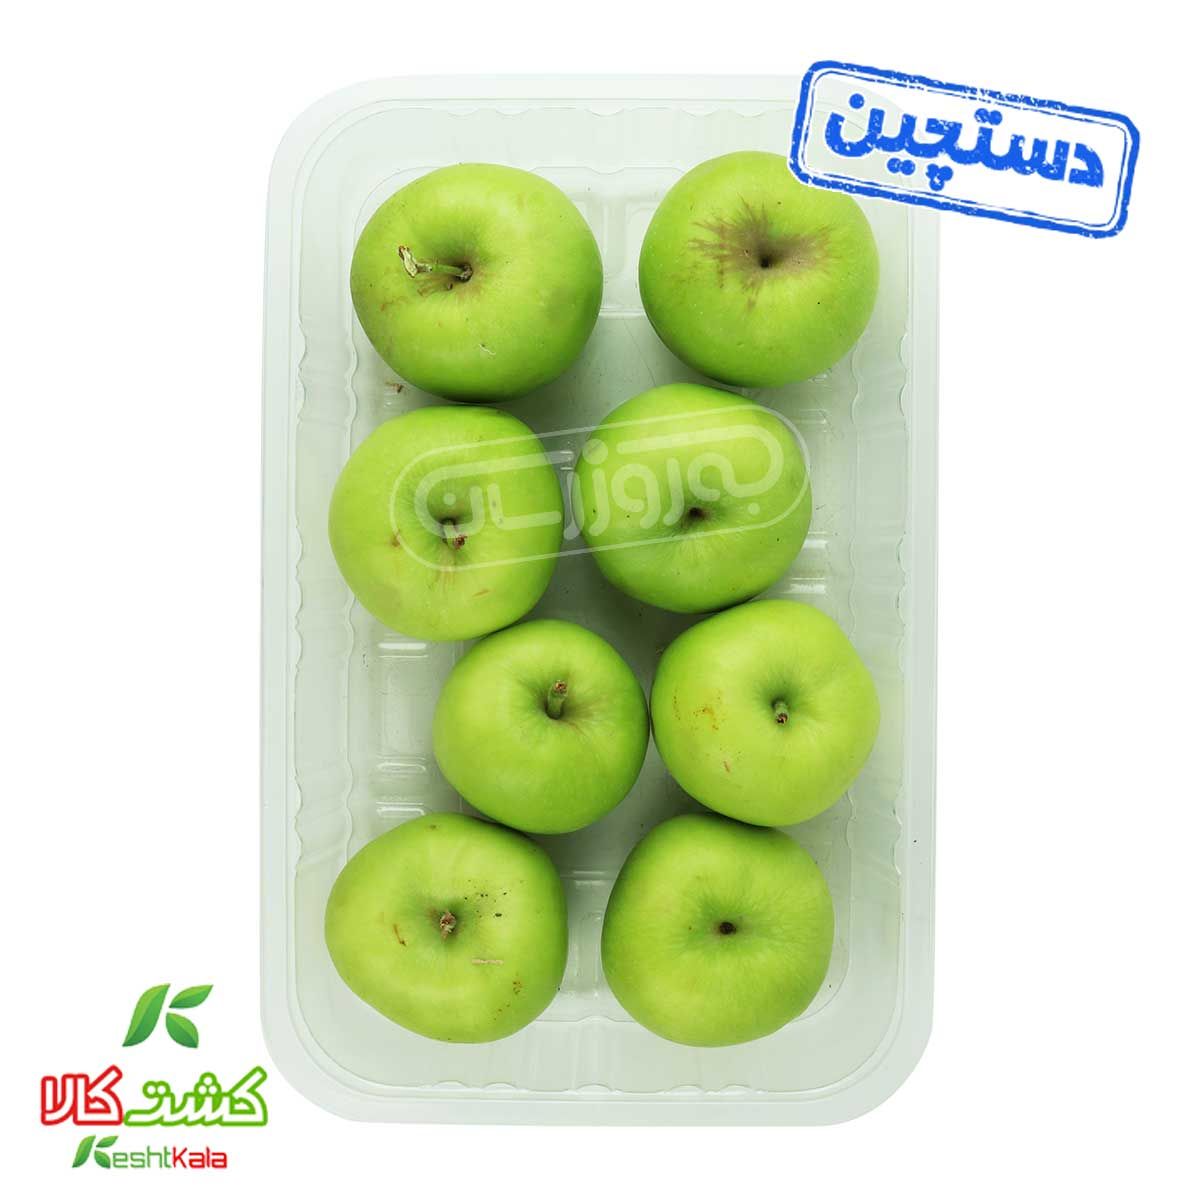 سیب گلاب سبز دستچین کشت کالا 1 کیلوگرمی